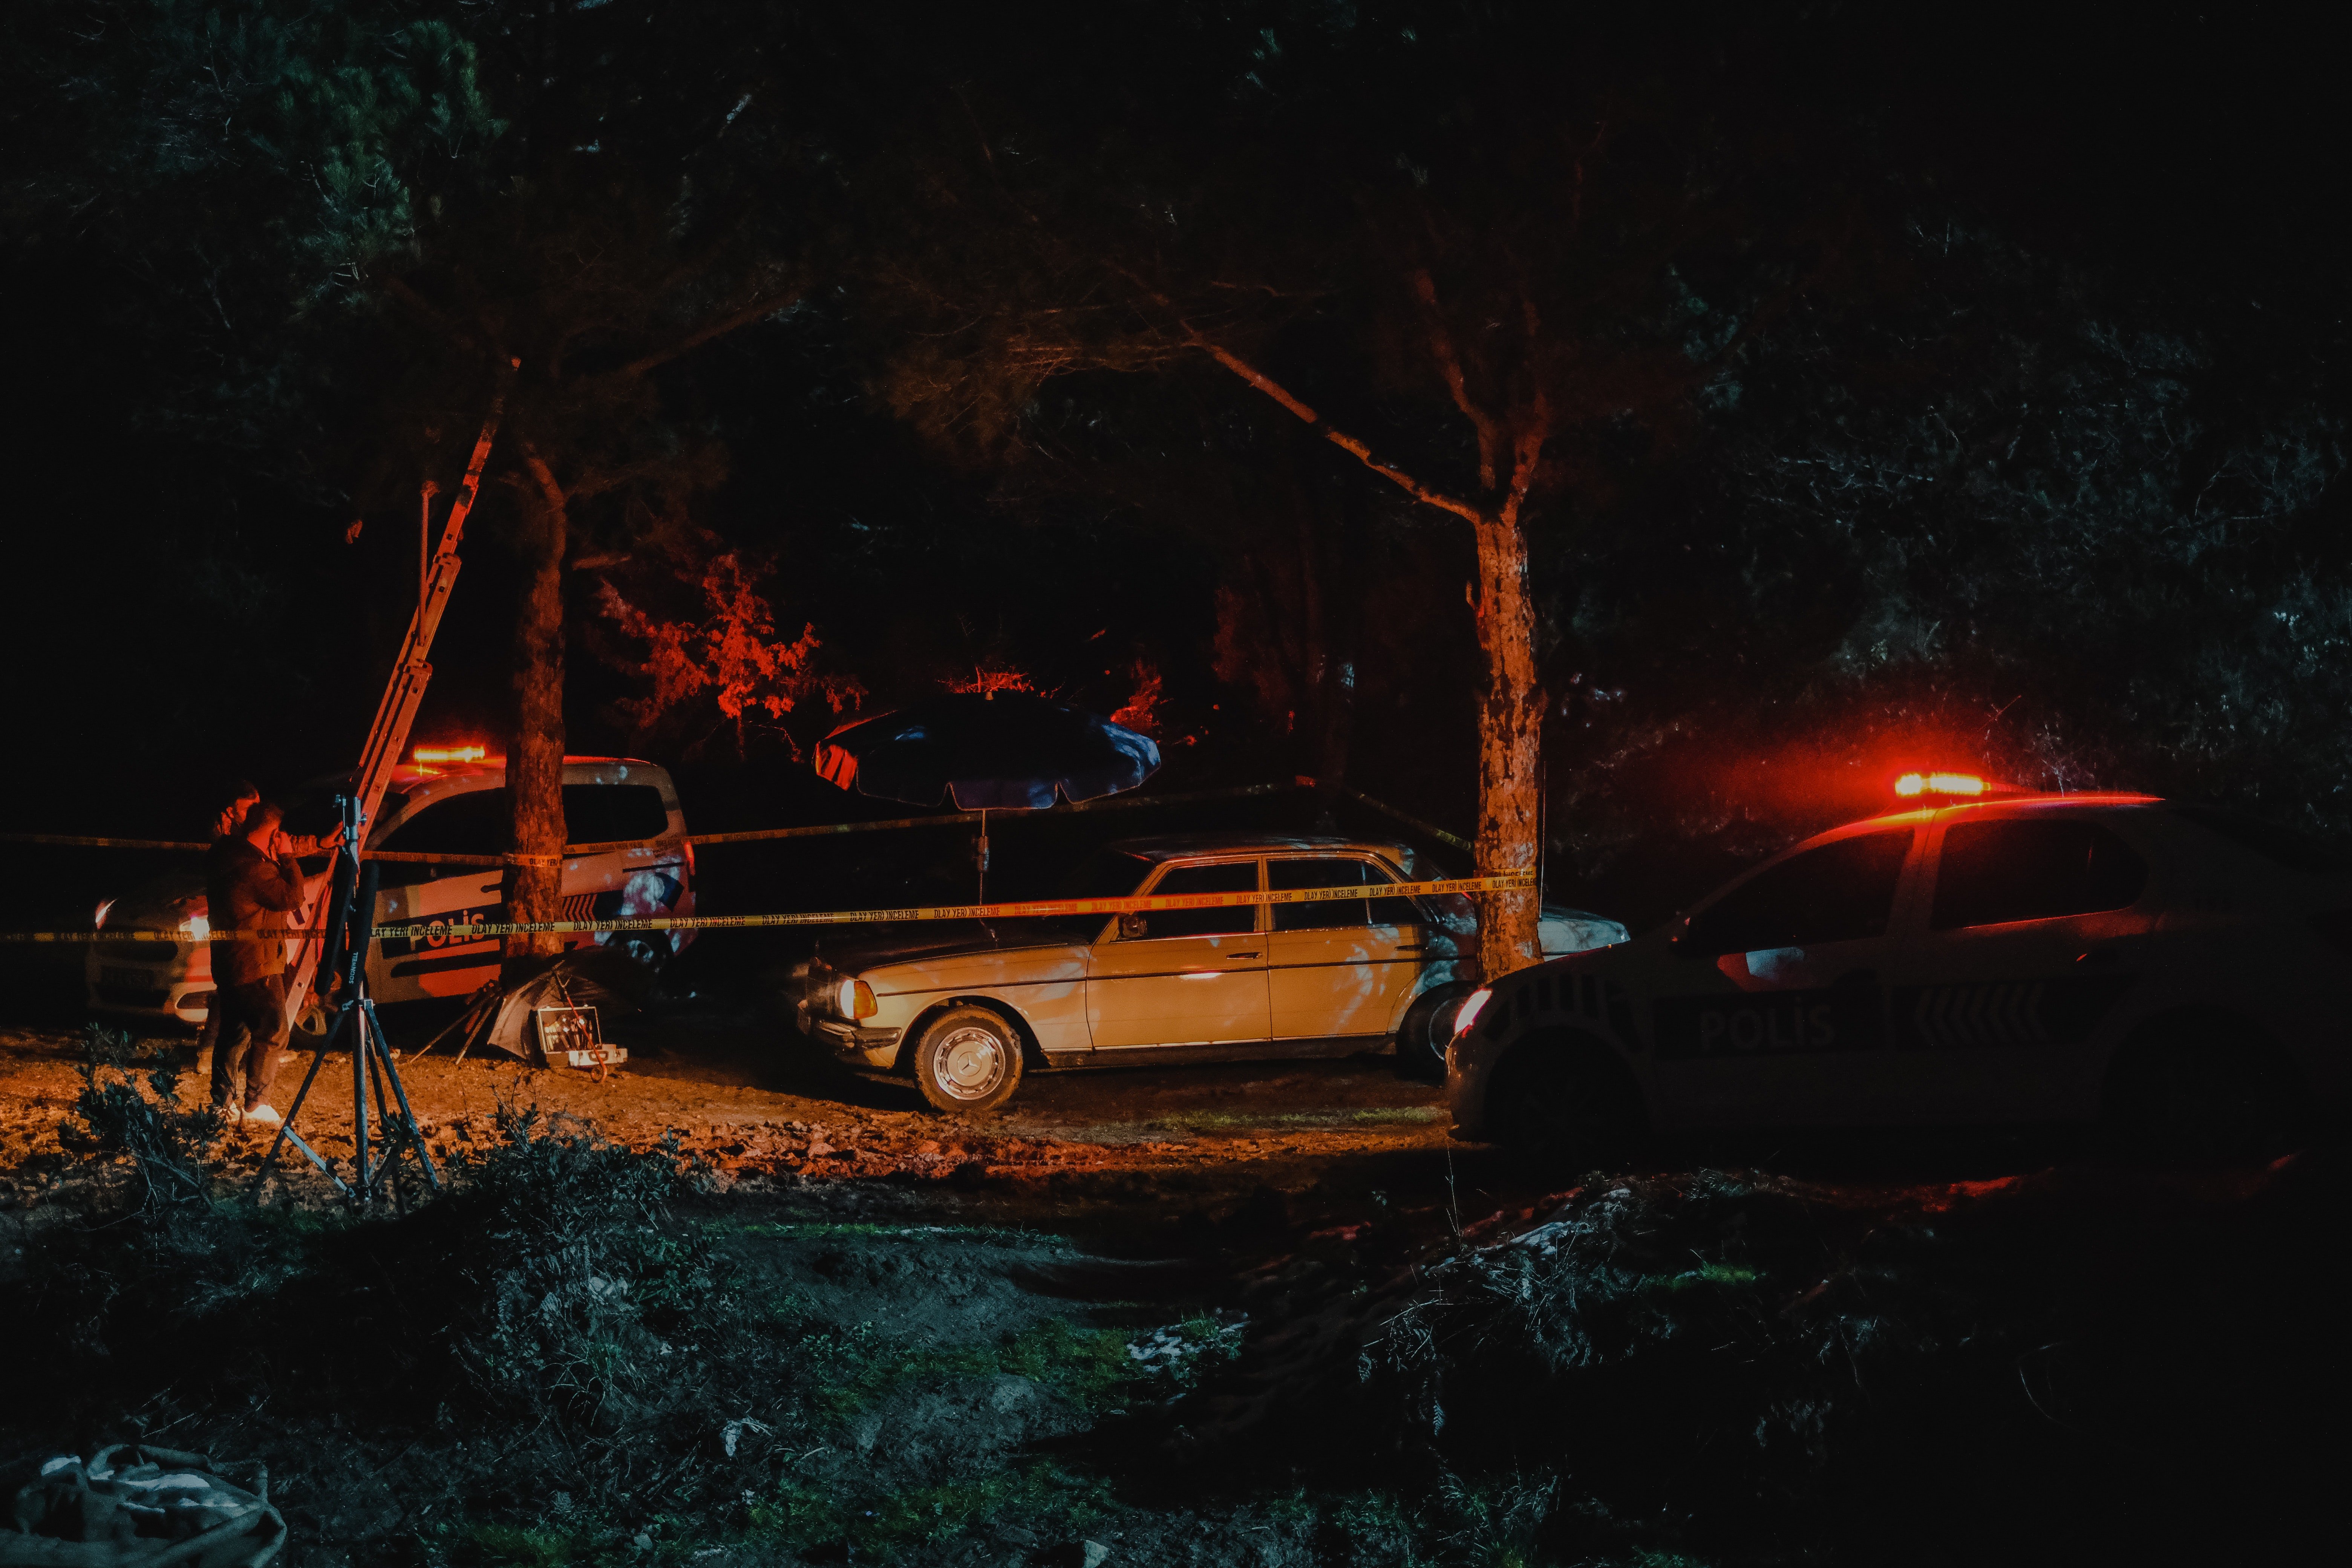 Adams Auto prallte gegen einen Baum. | Quelle: Pexels